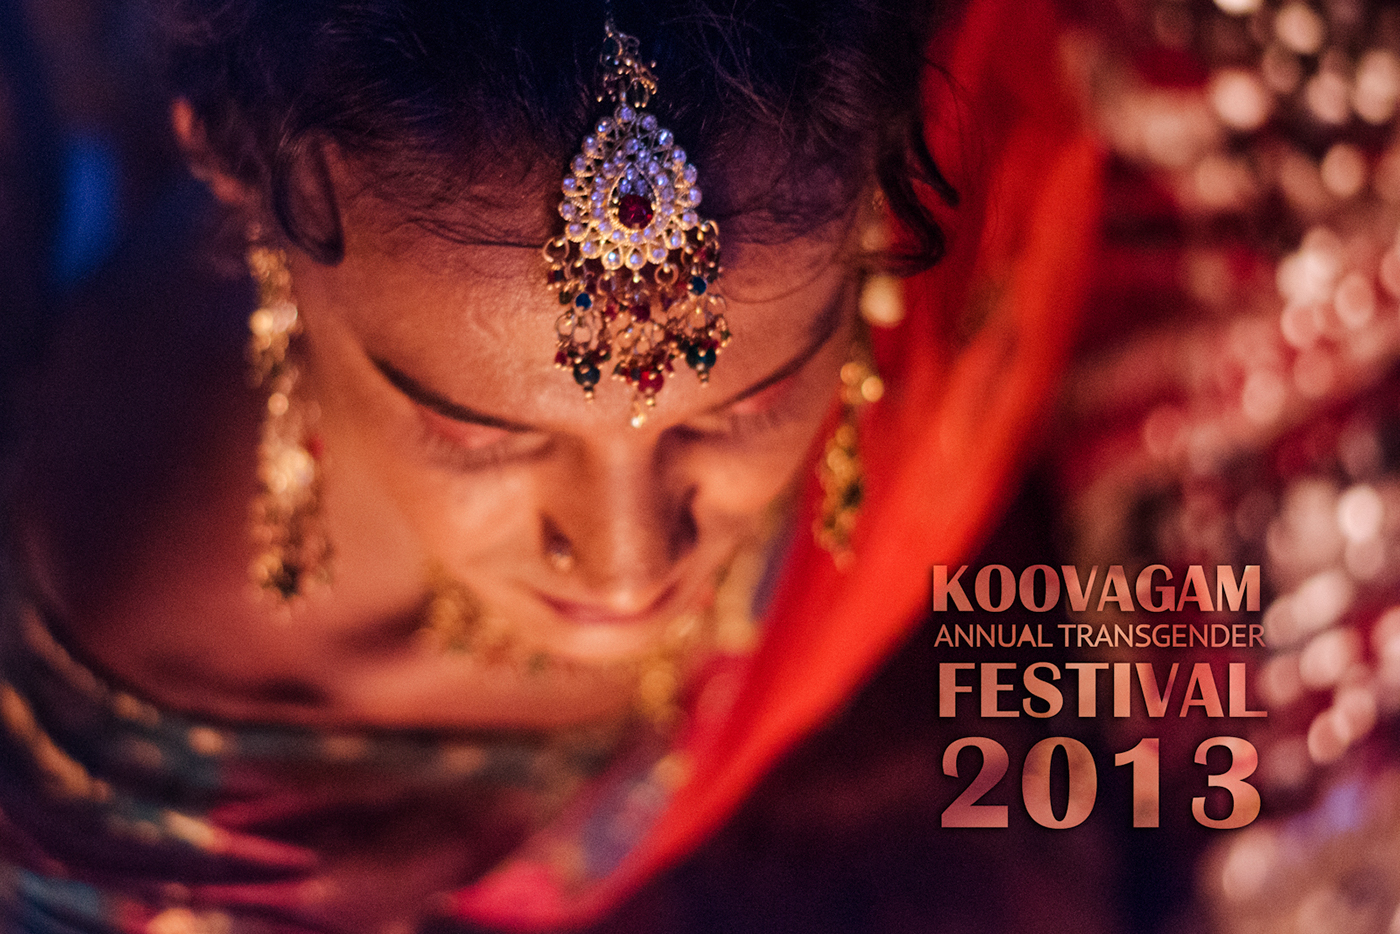 koovagam - Annual Transgender Festival on Behance